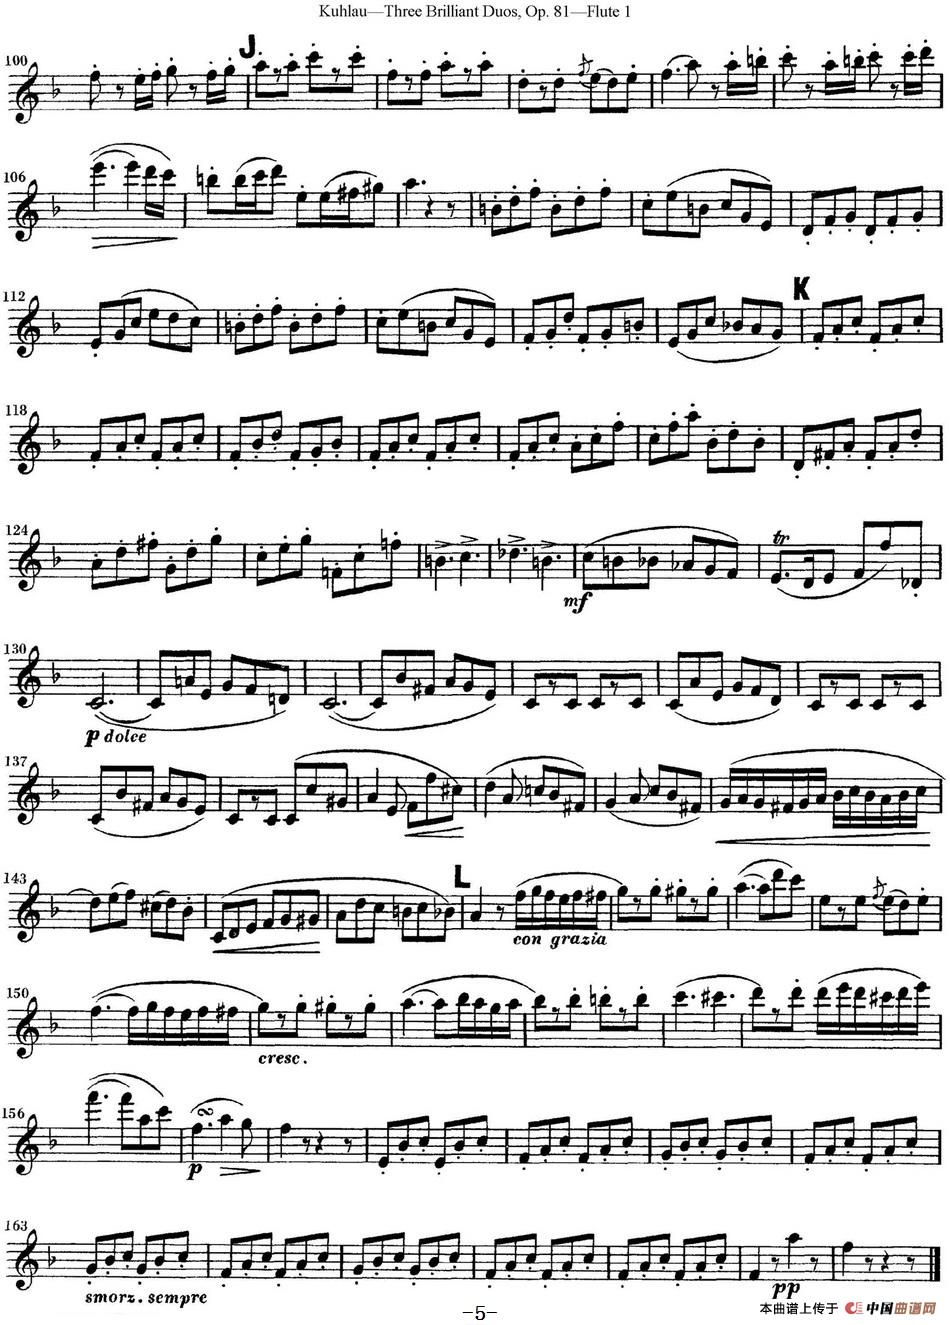 库劳长笛二重奏练习三段OP.81——Flute 1（NO.2）